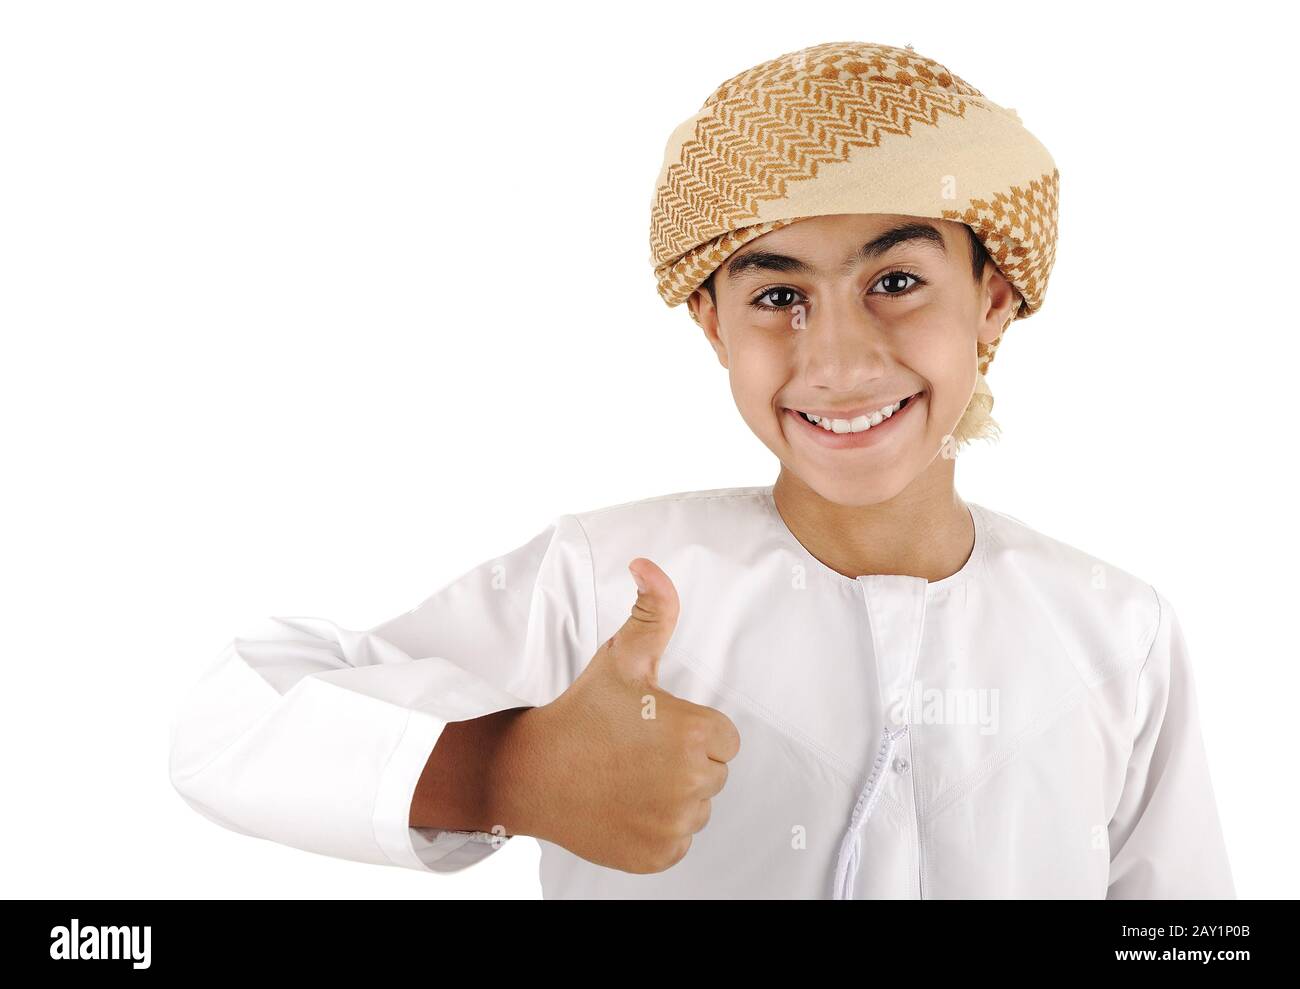 Арабский мальчик. Араб палец вверх. Арабские мальчишки с улыбкой. Фото араба подростка. Араб мальчик Сток.